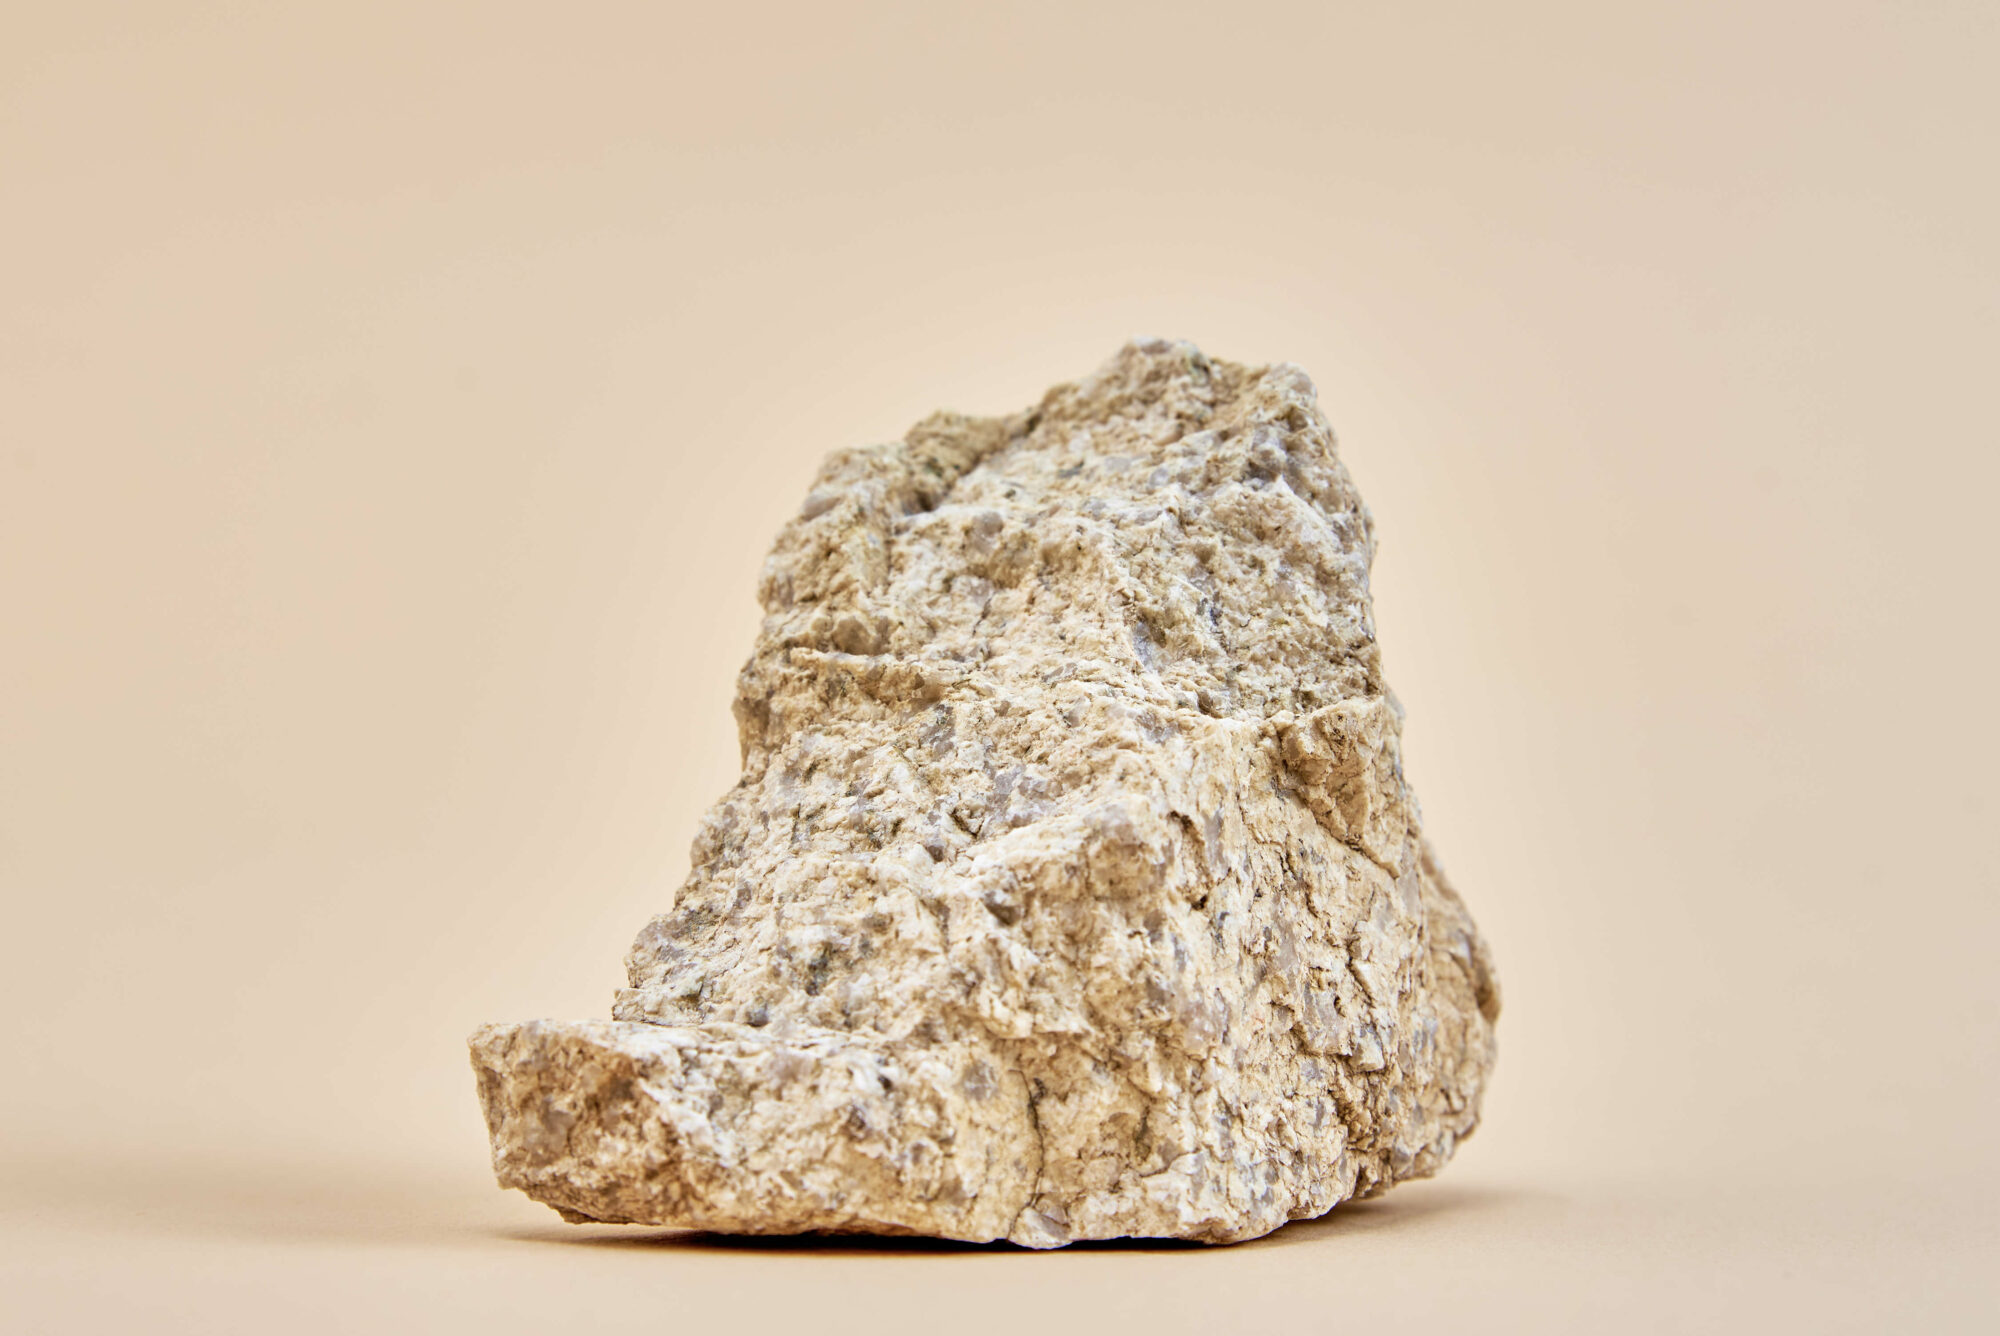 Felsbrocken - von Menschenhand gänzlich unbearbeitet